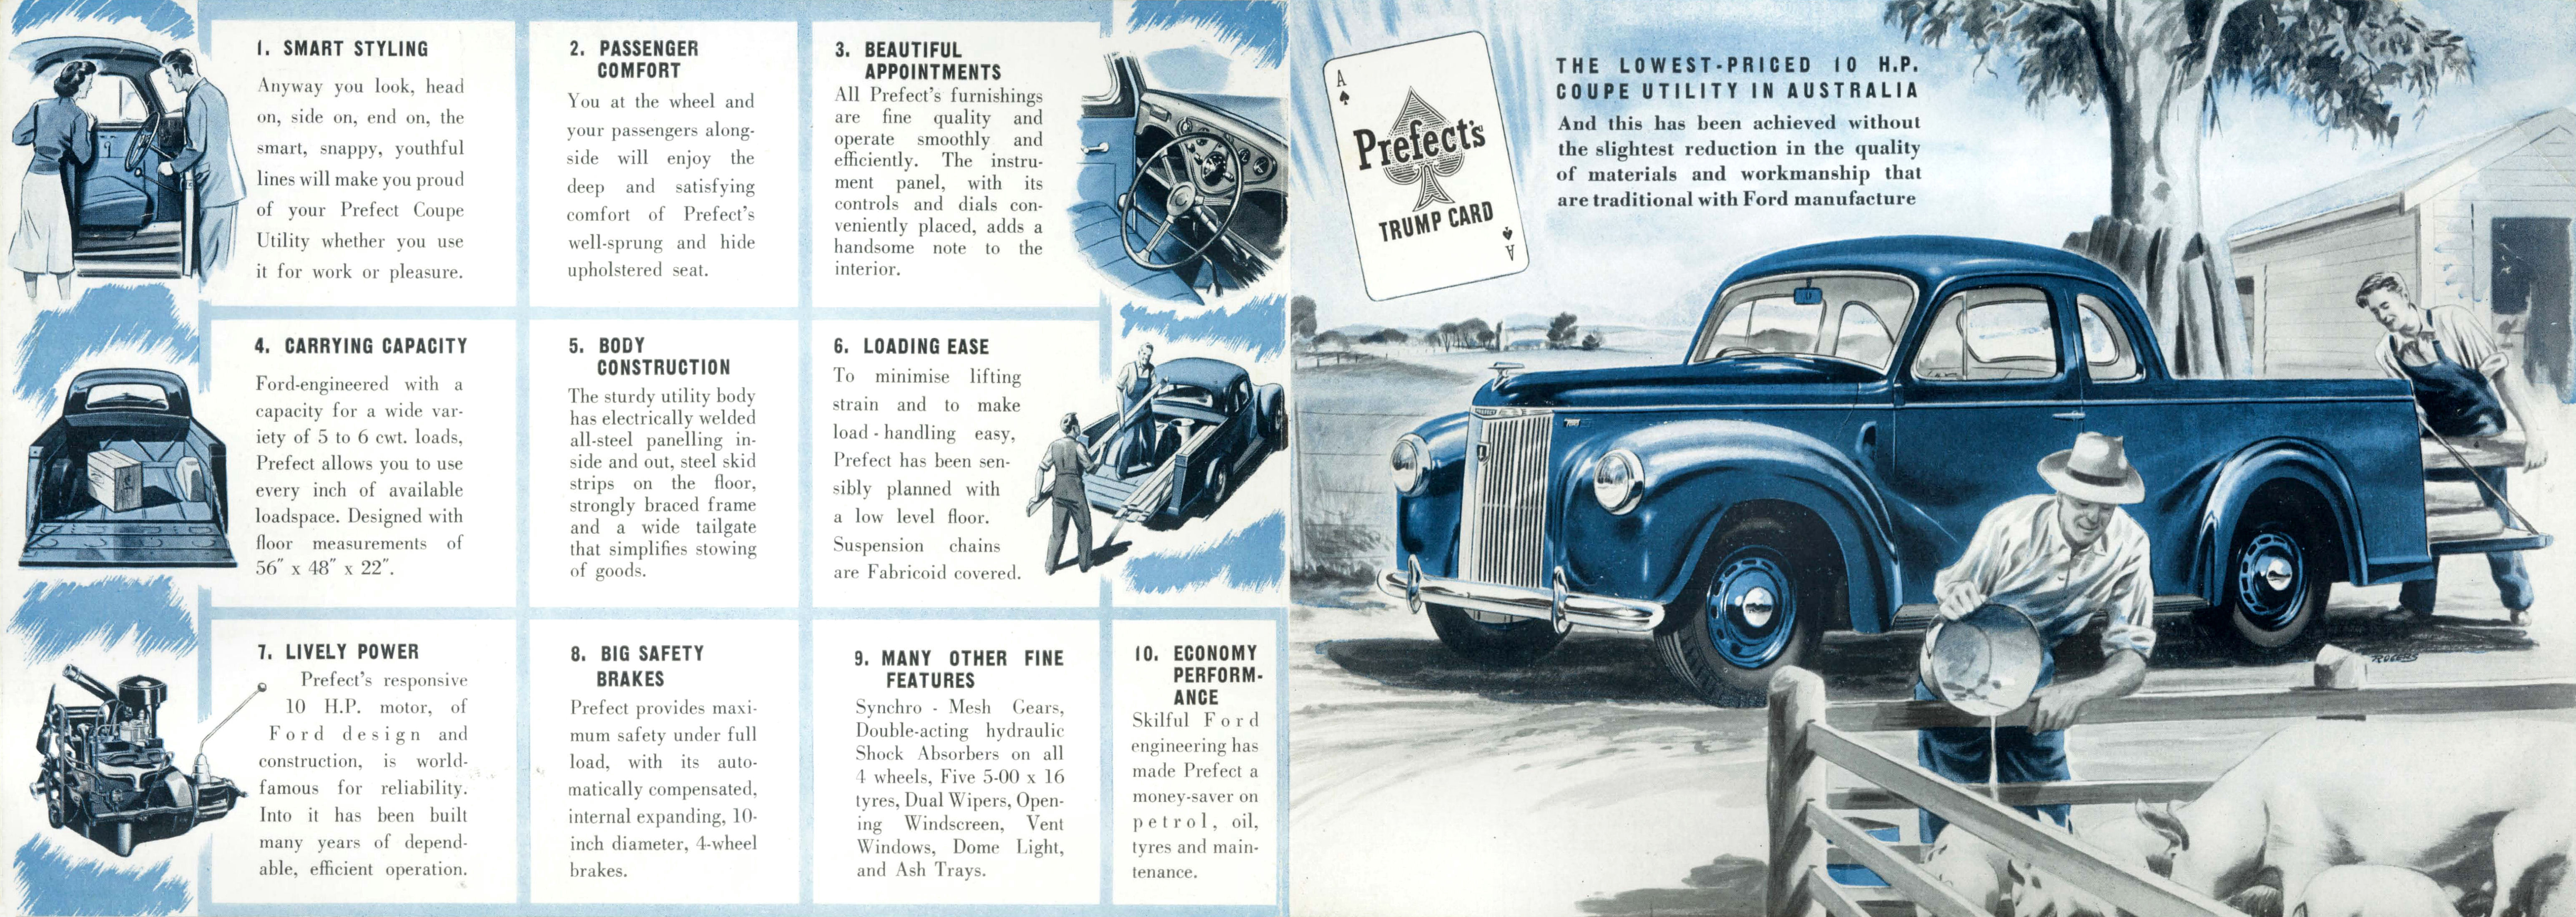 1952 Ford Prefect Utility-Side B